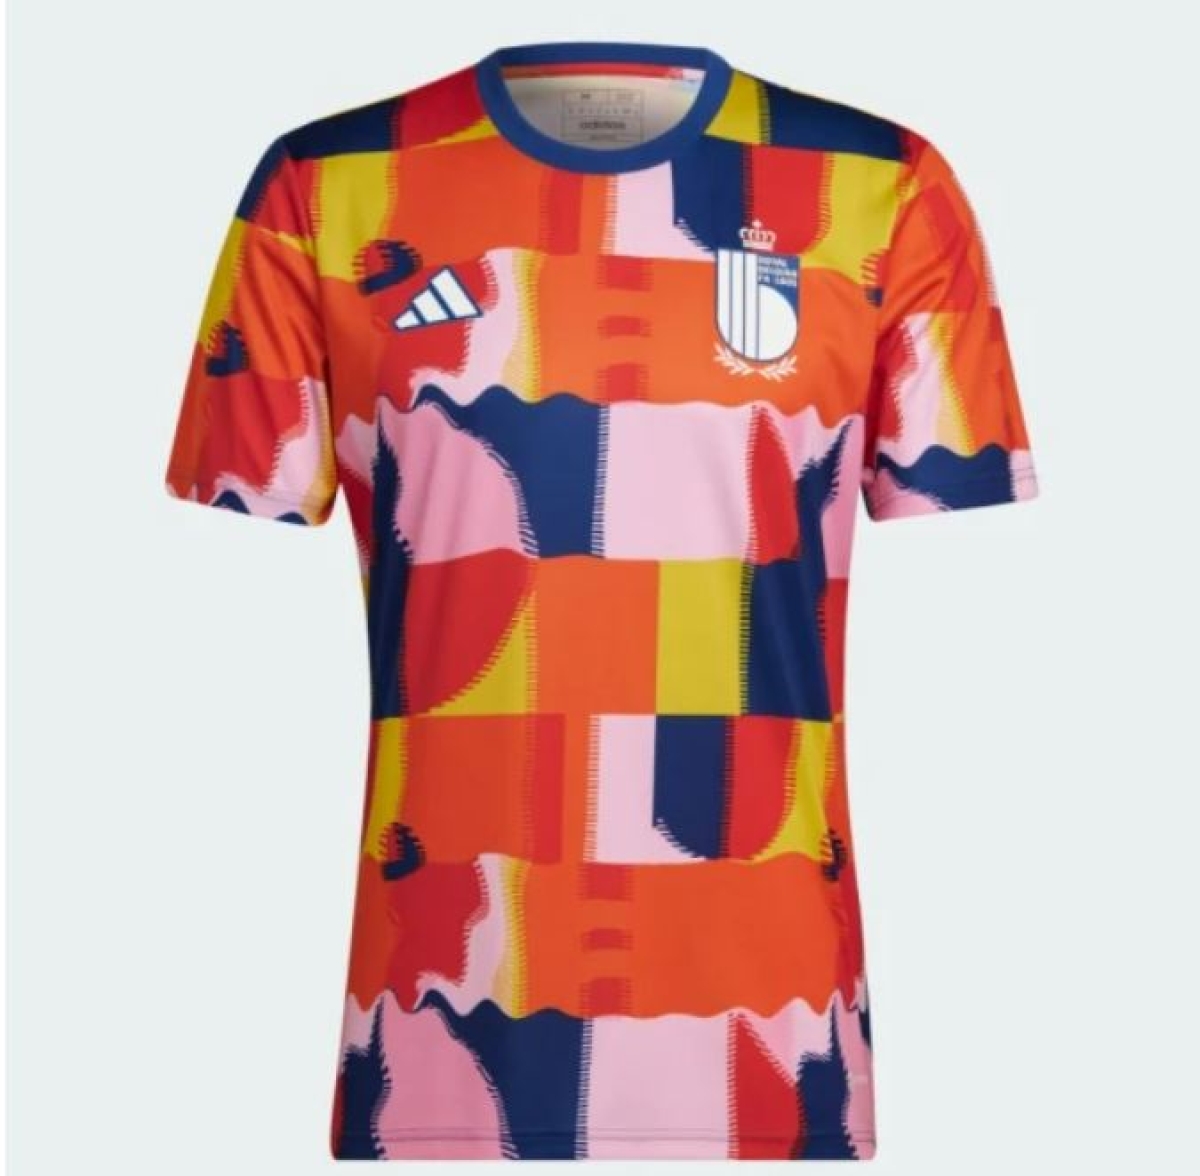 Acesta este tricoul de încălzire pe care Belgia voia să îl folosească la Campionatul Mondial. FIFA a spus nu. Sursă foto: Metro.co.uk